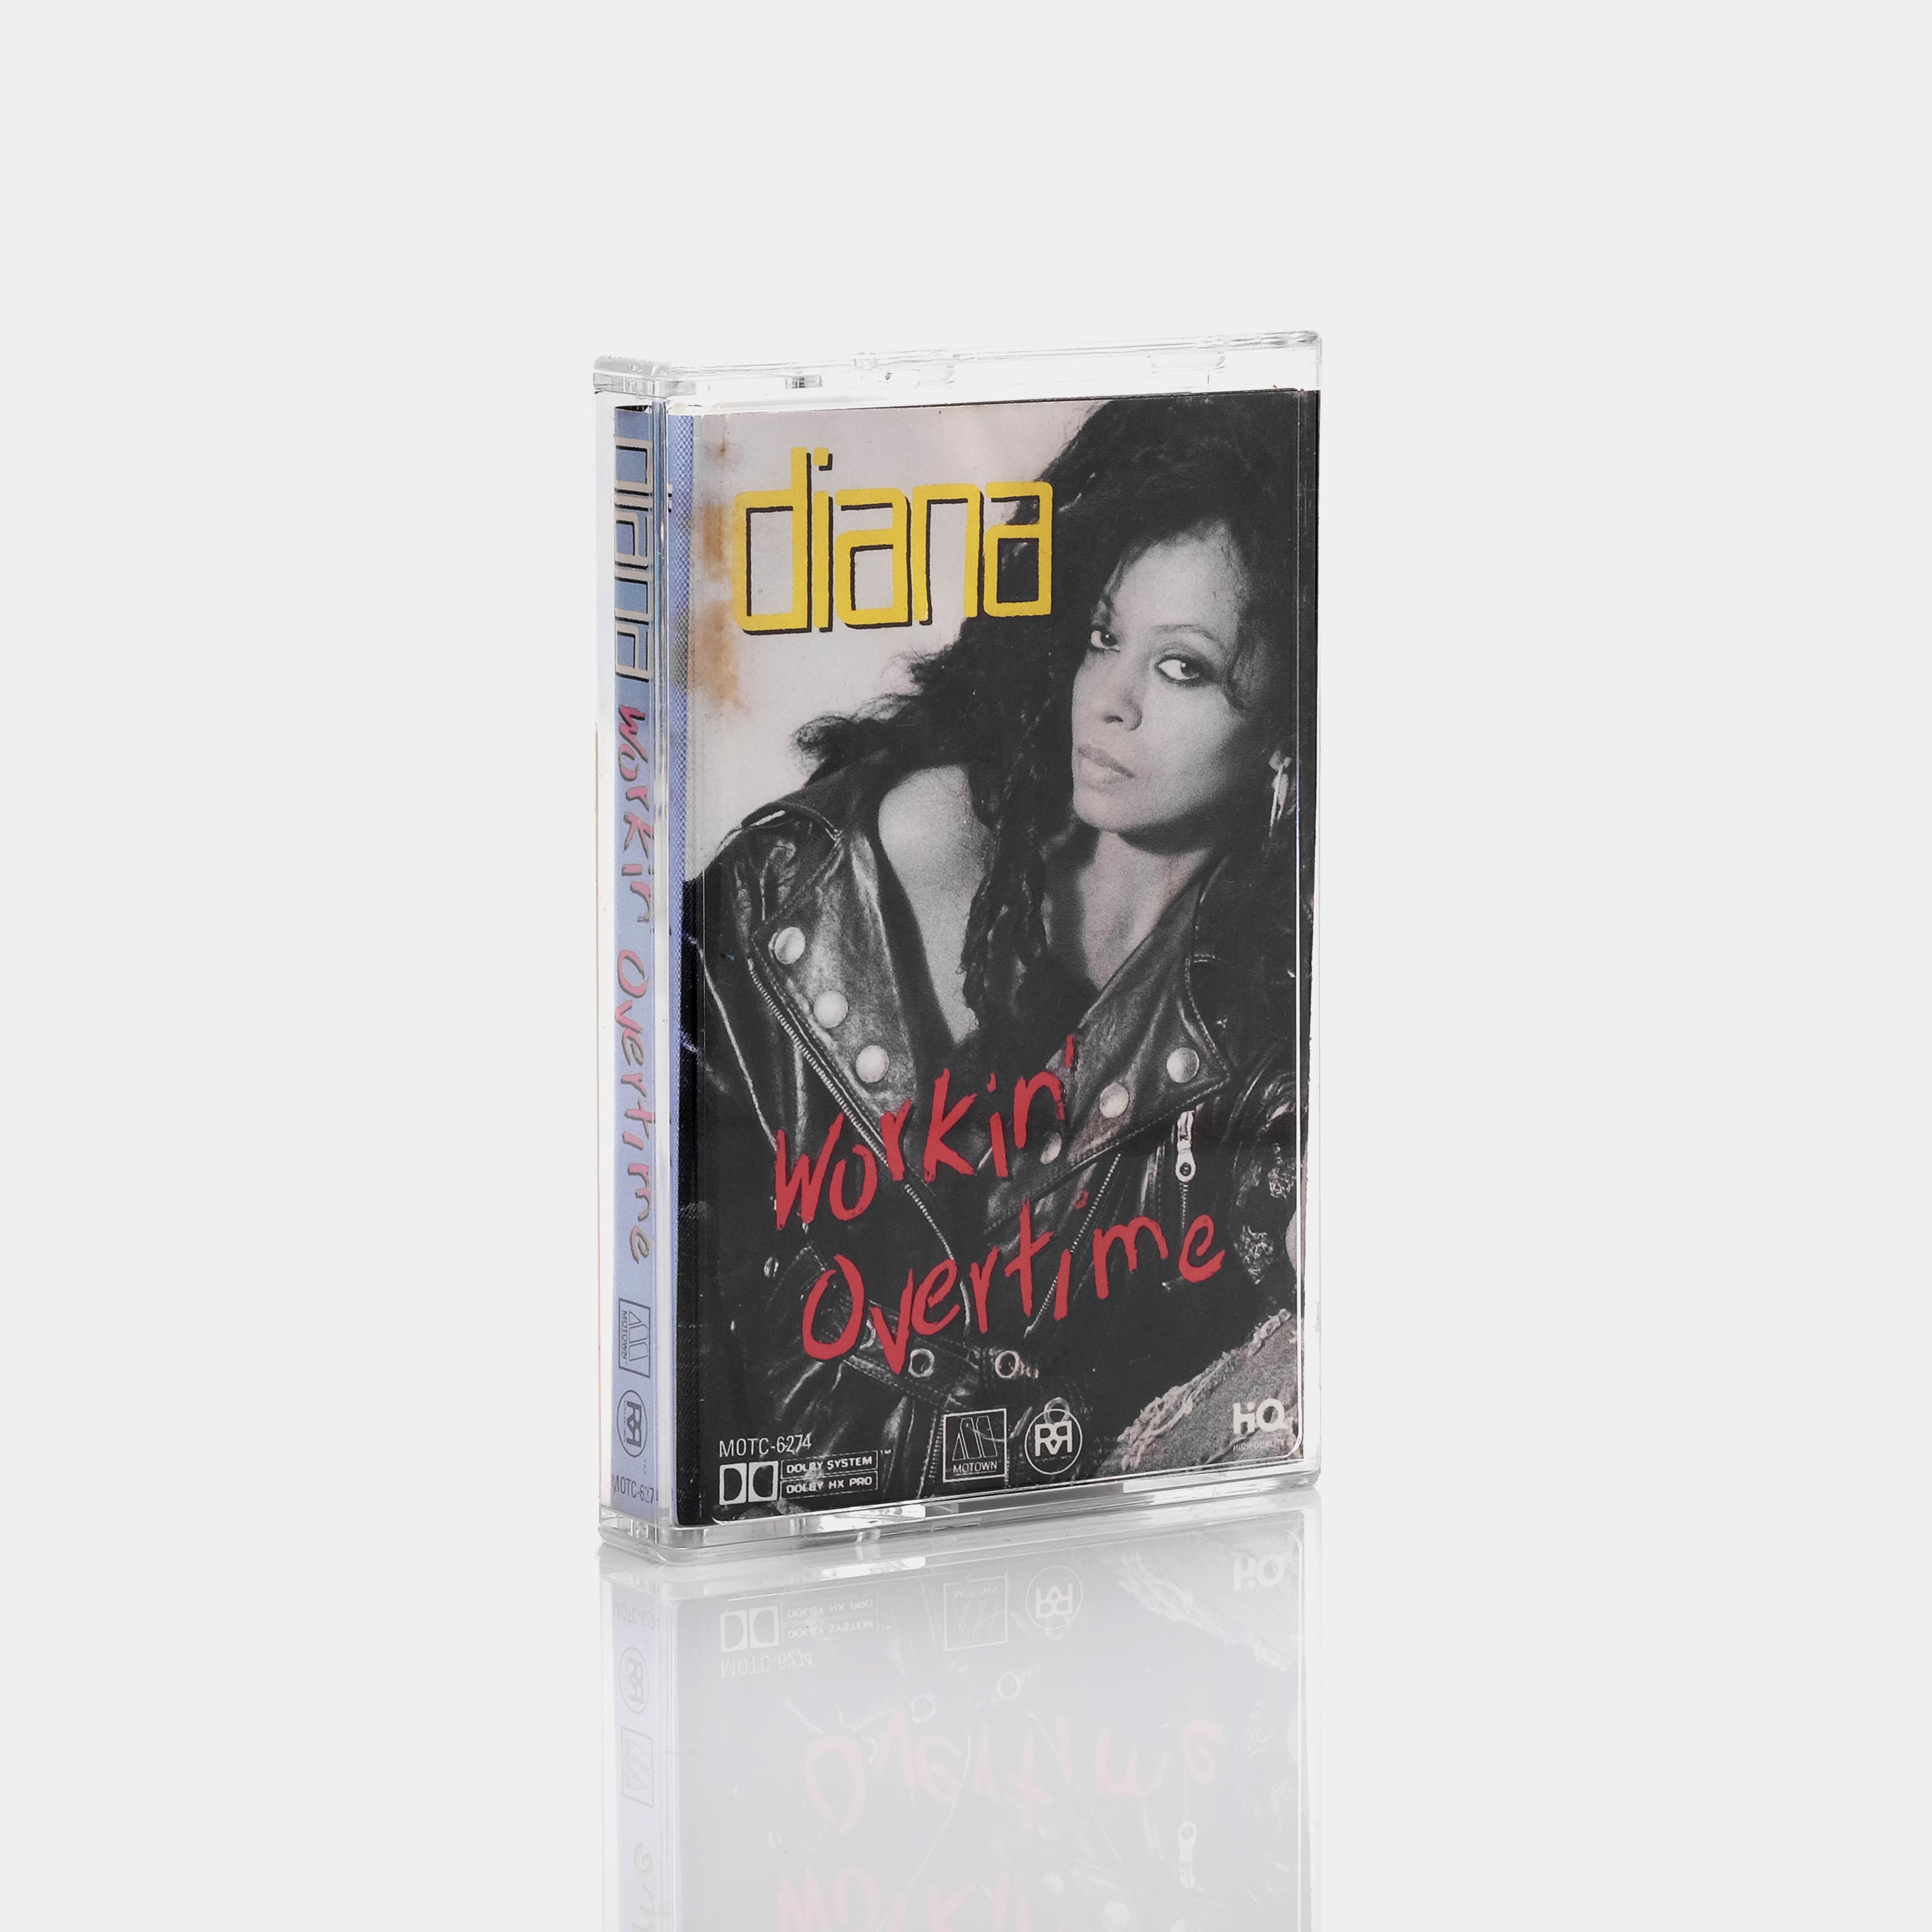 Diana Ross - Workin' Overtime Cassette Tape